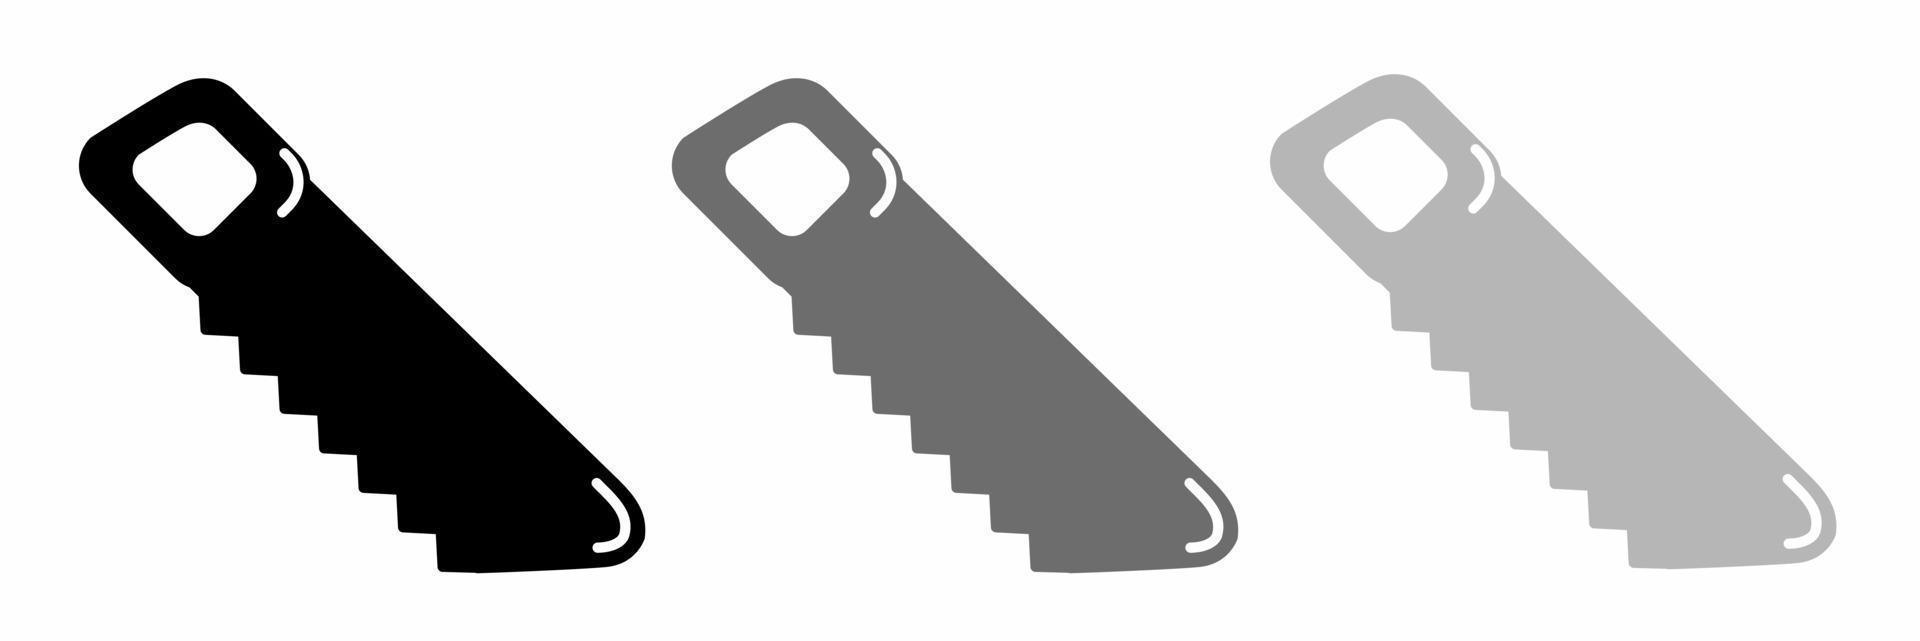 Kettensäge Symbol Symbol Illustration einstellen zum Geschäft. vektor